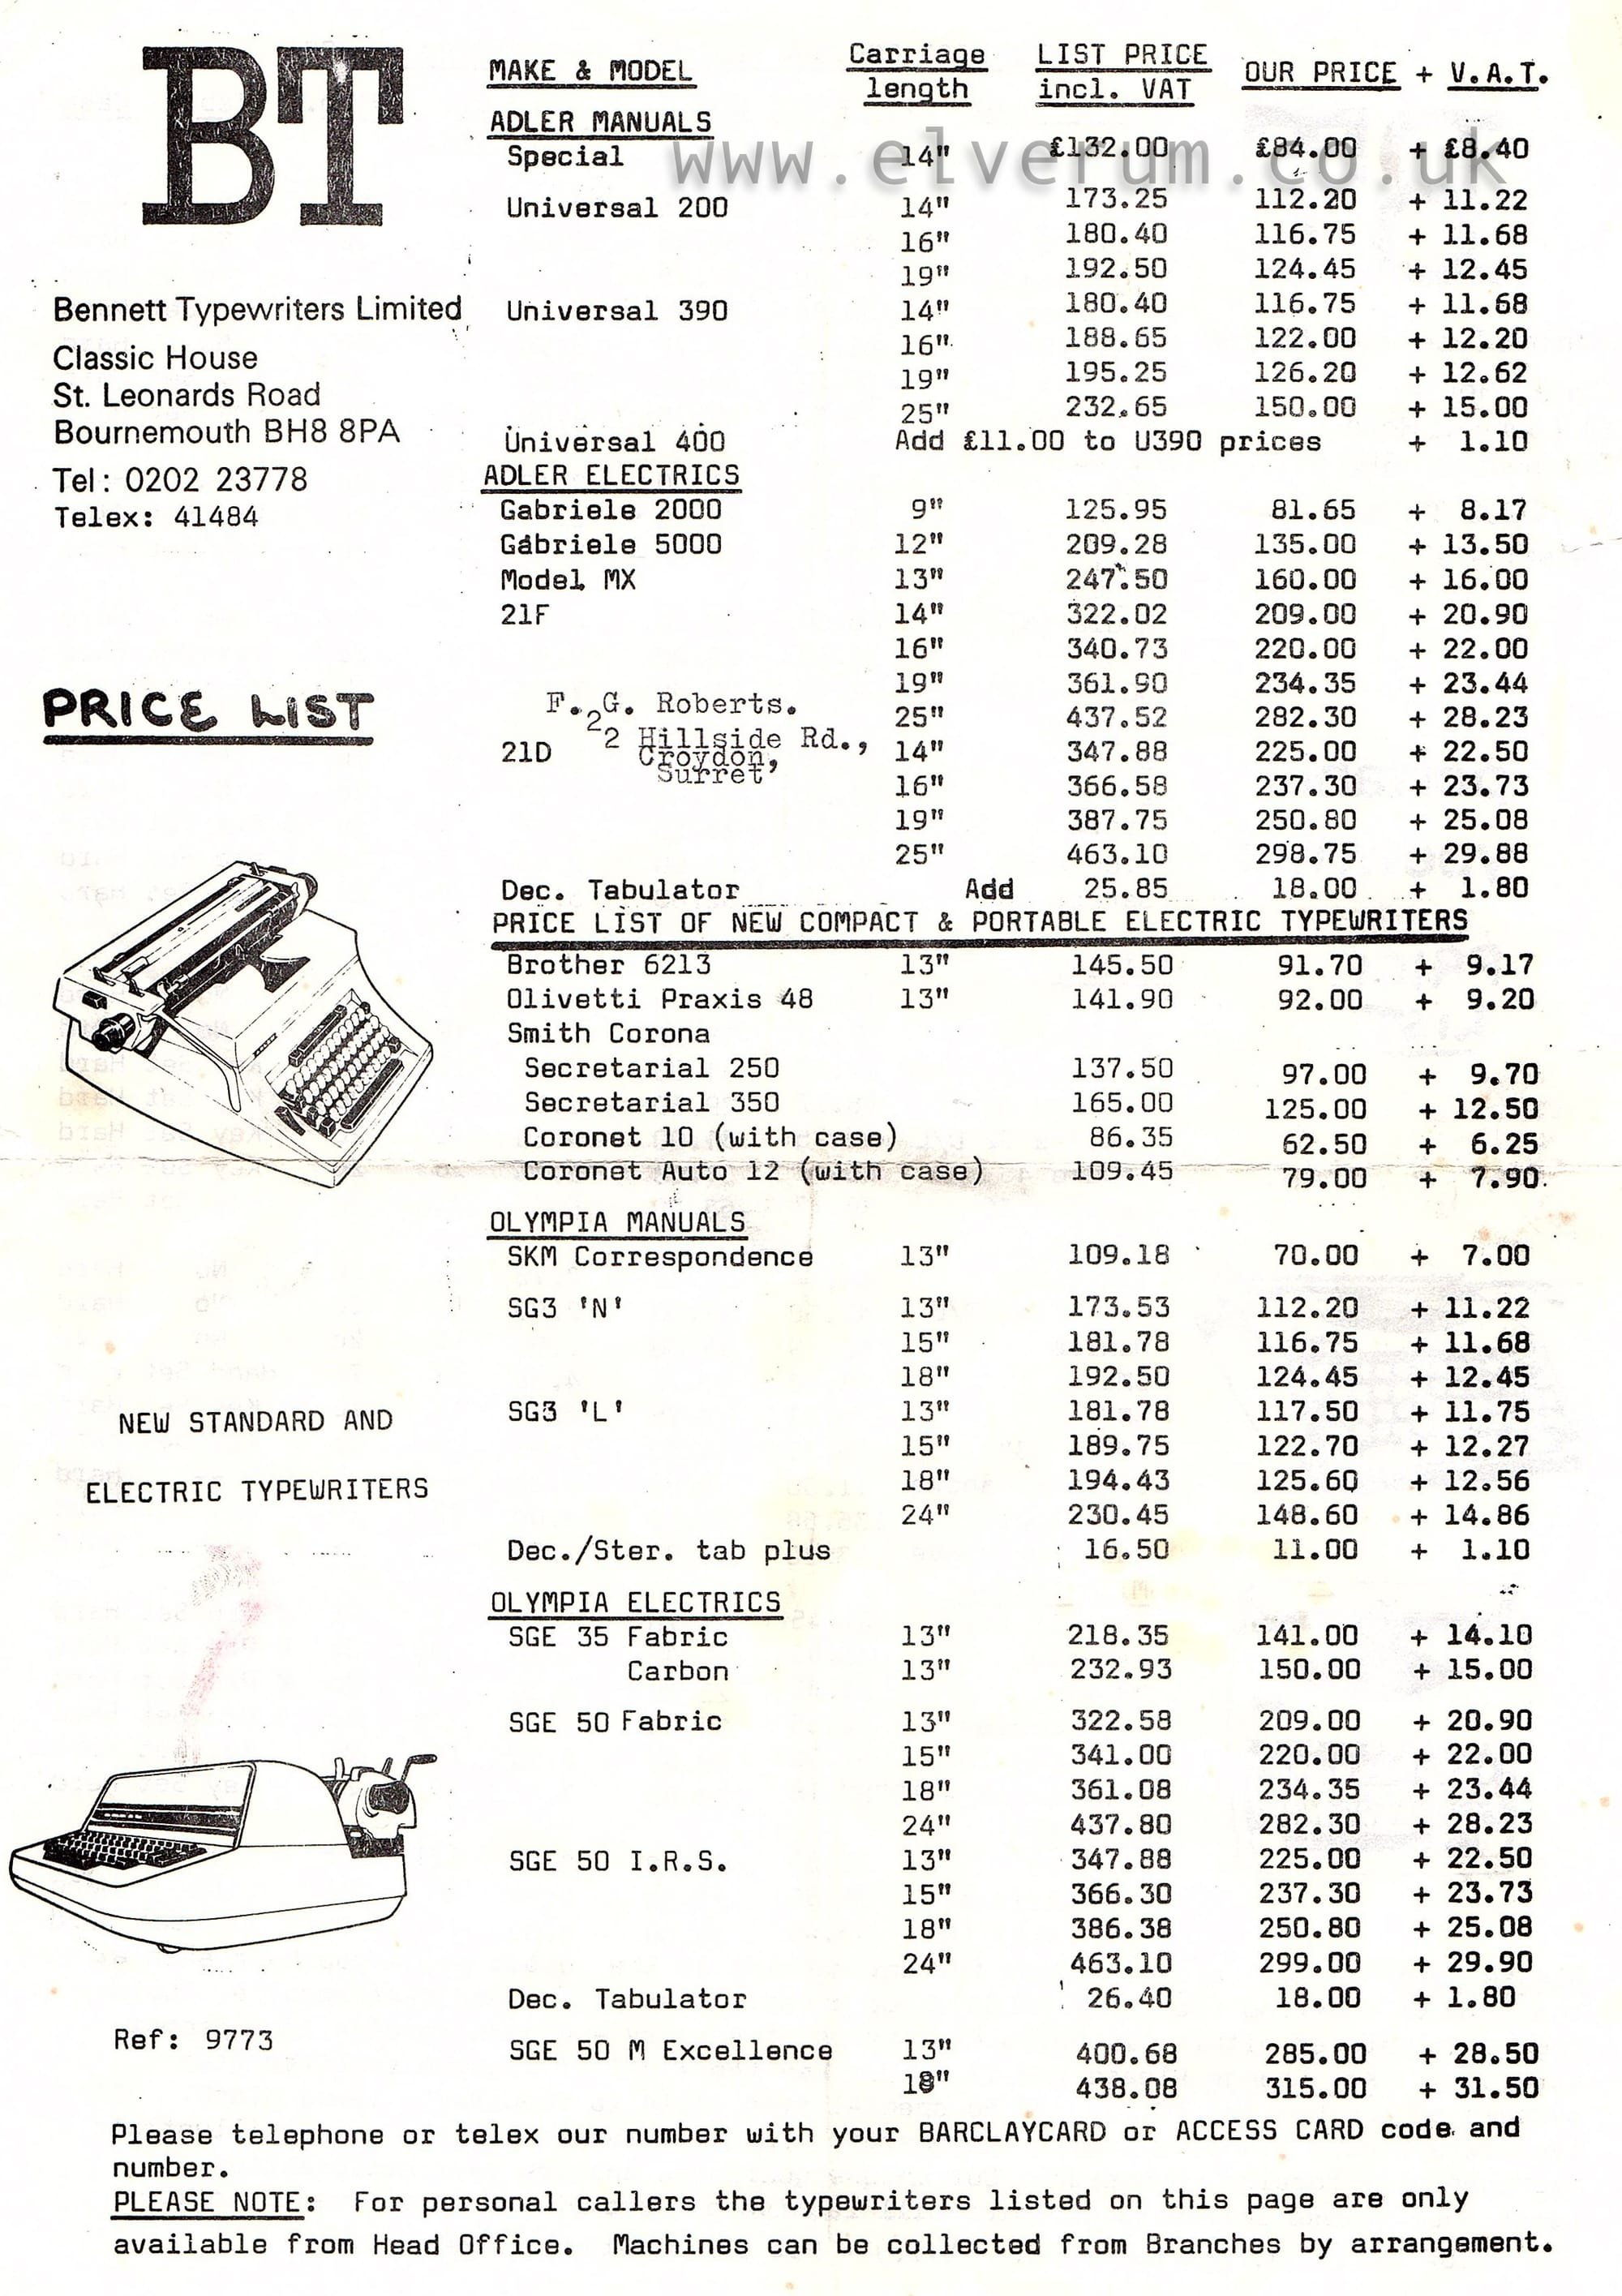 1973 Portable Typewriter Price List